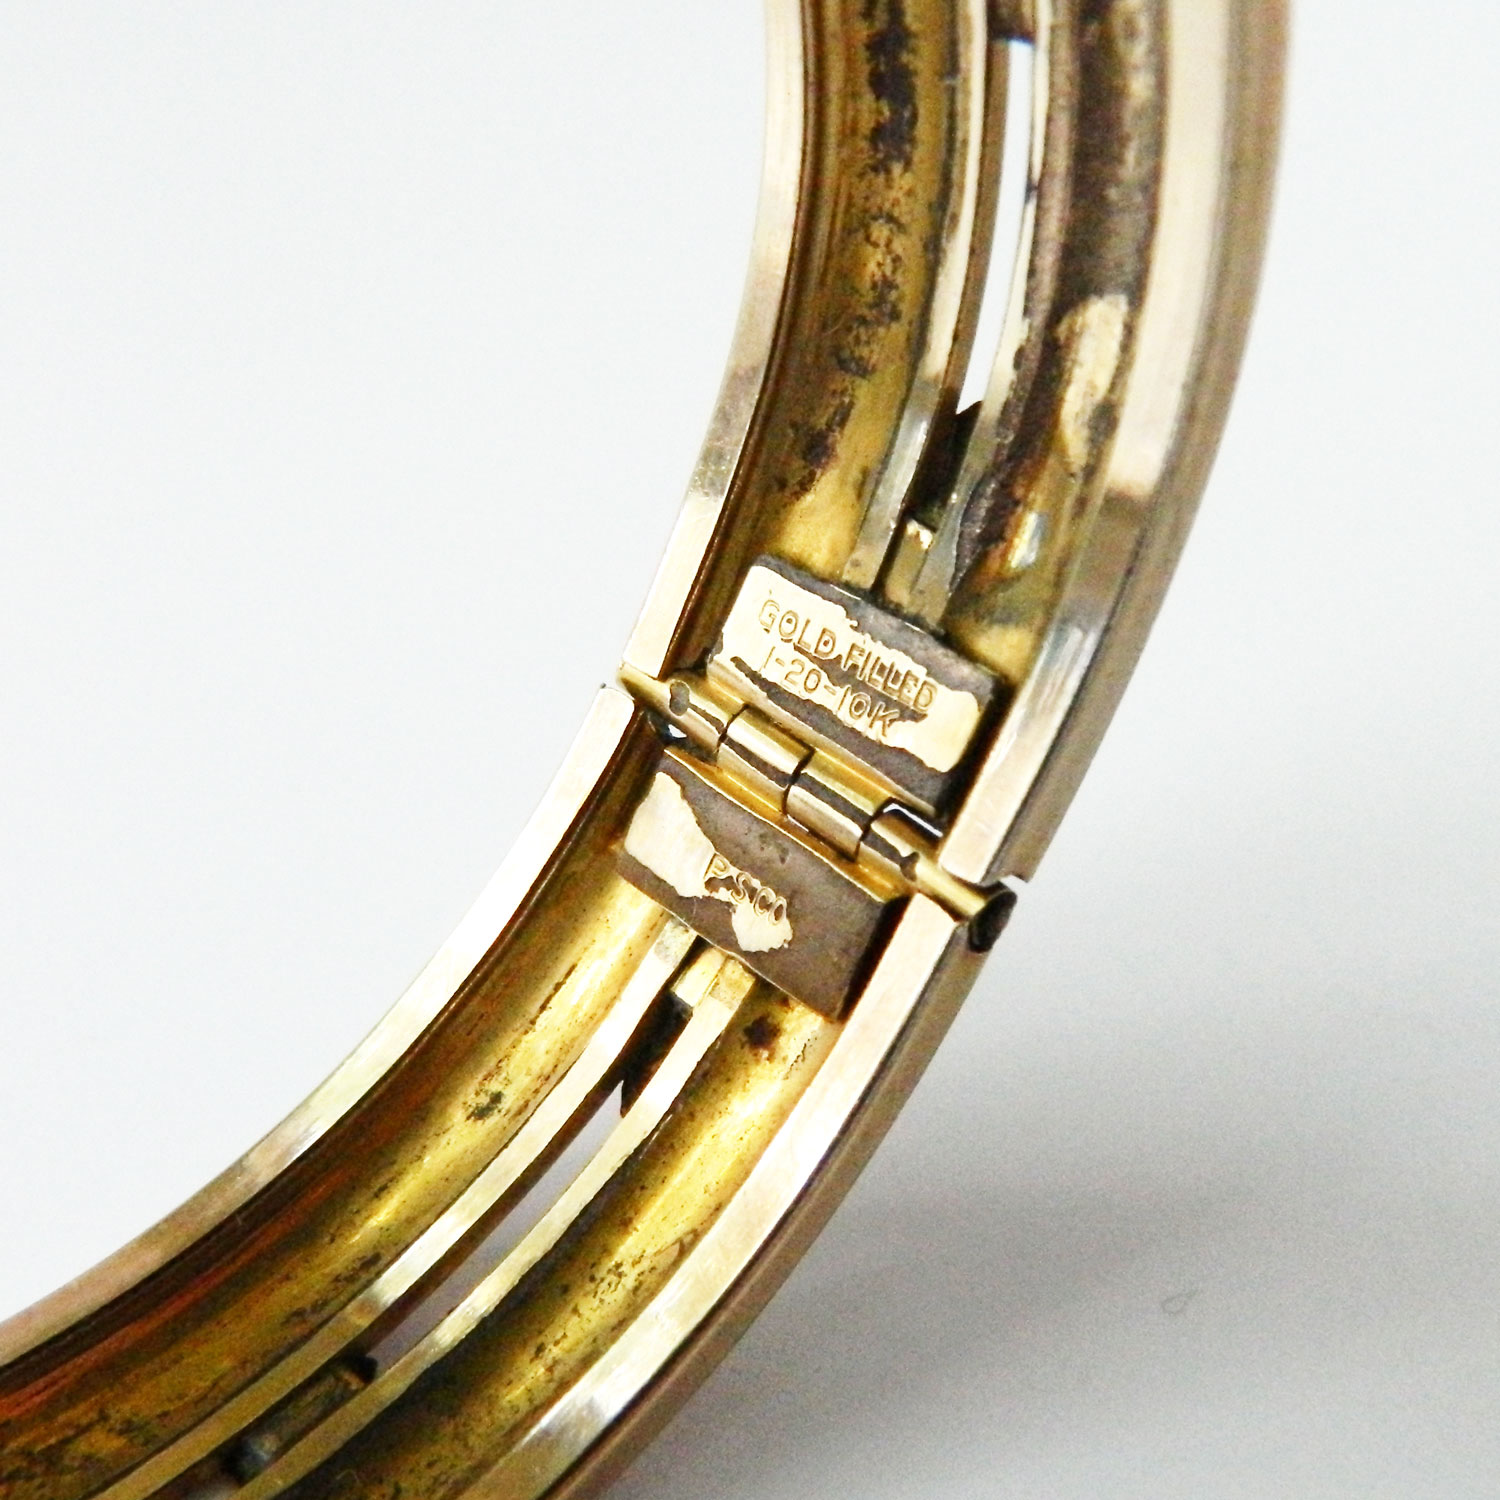 Edwardian gold filled bangle bracelet